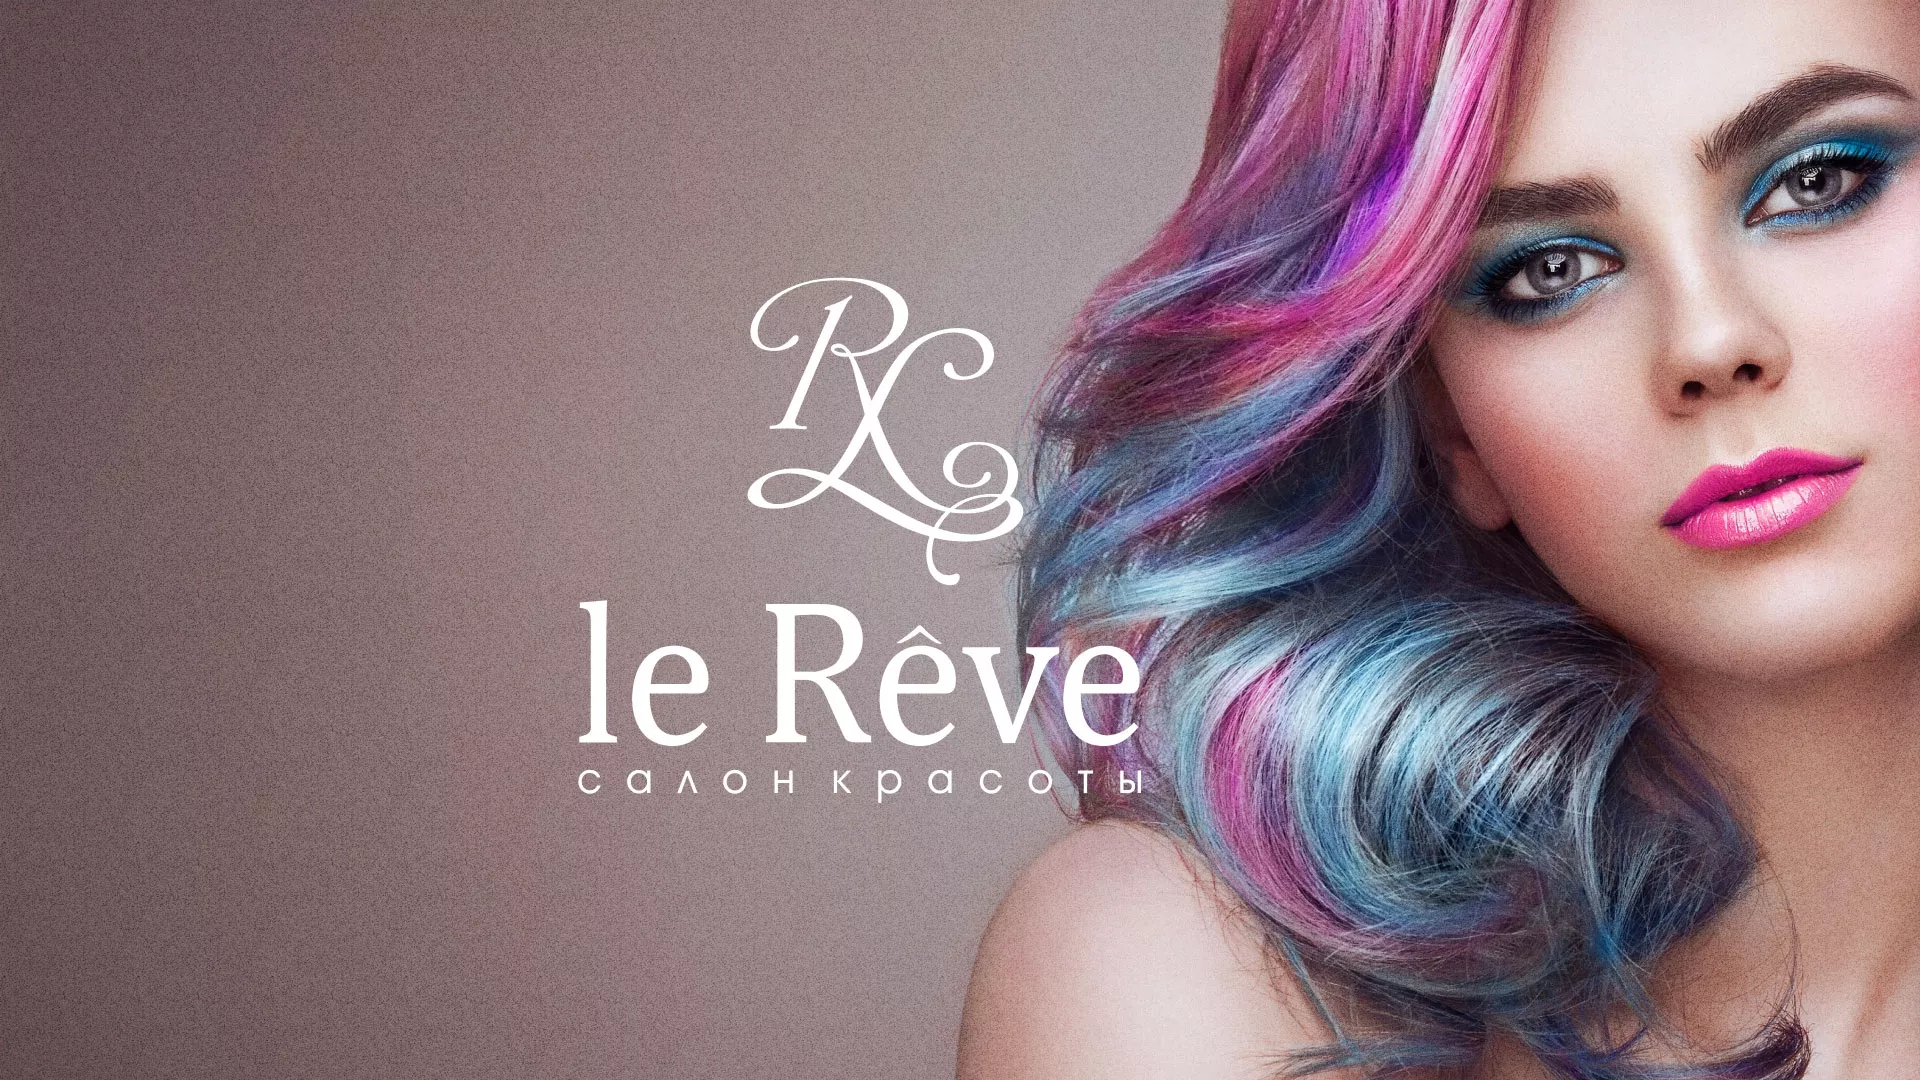 Создание сайта для салона красоты «Le Reve» в Казани